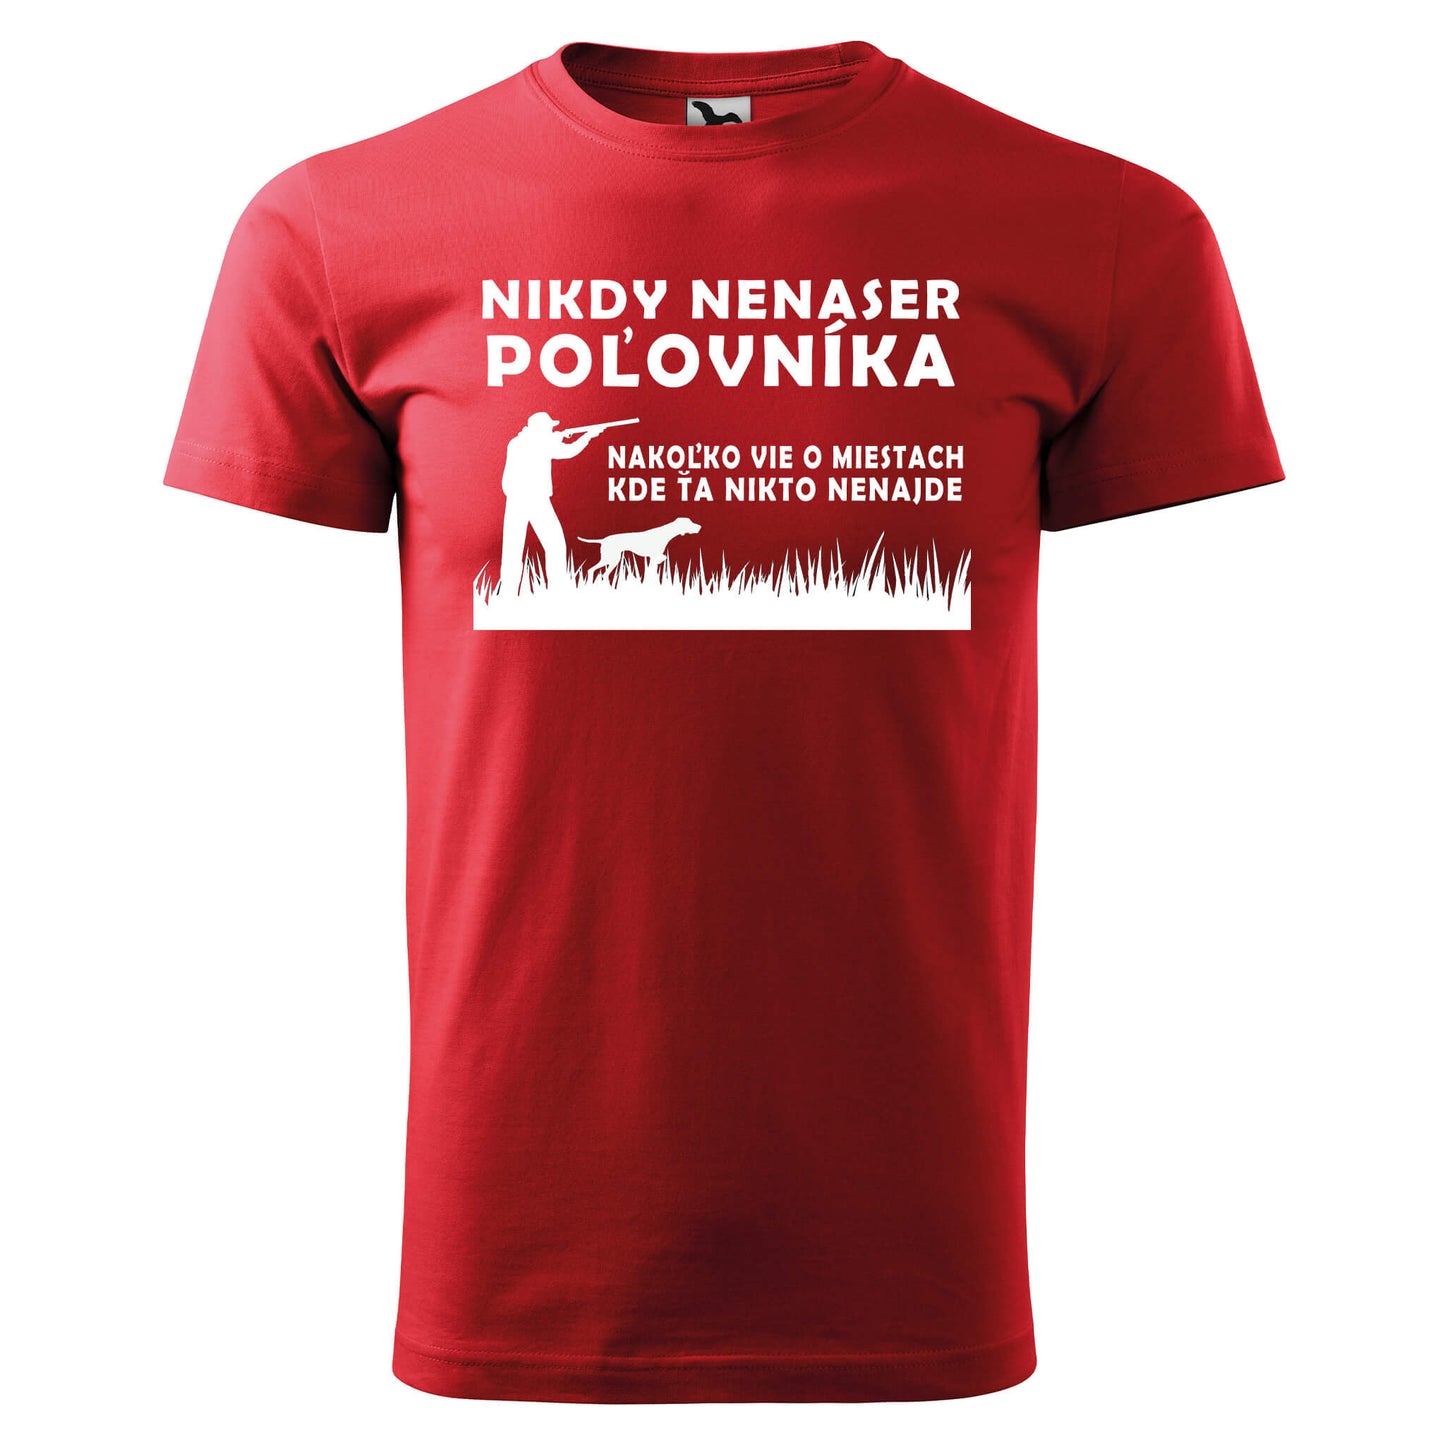 T-shirt - Nikdy nenaser poľovníka - rvdesignprint